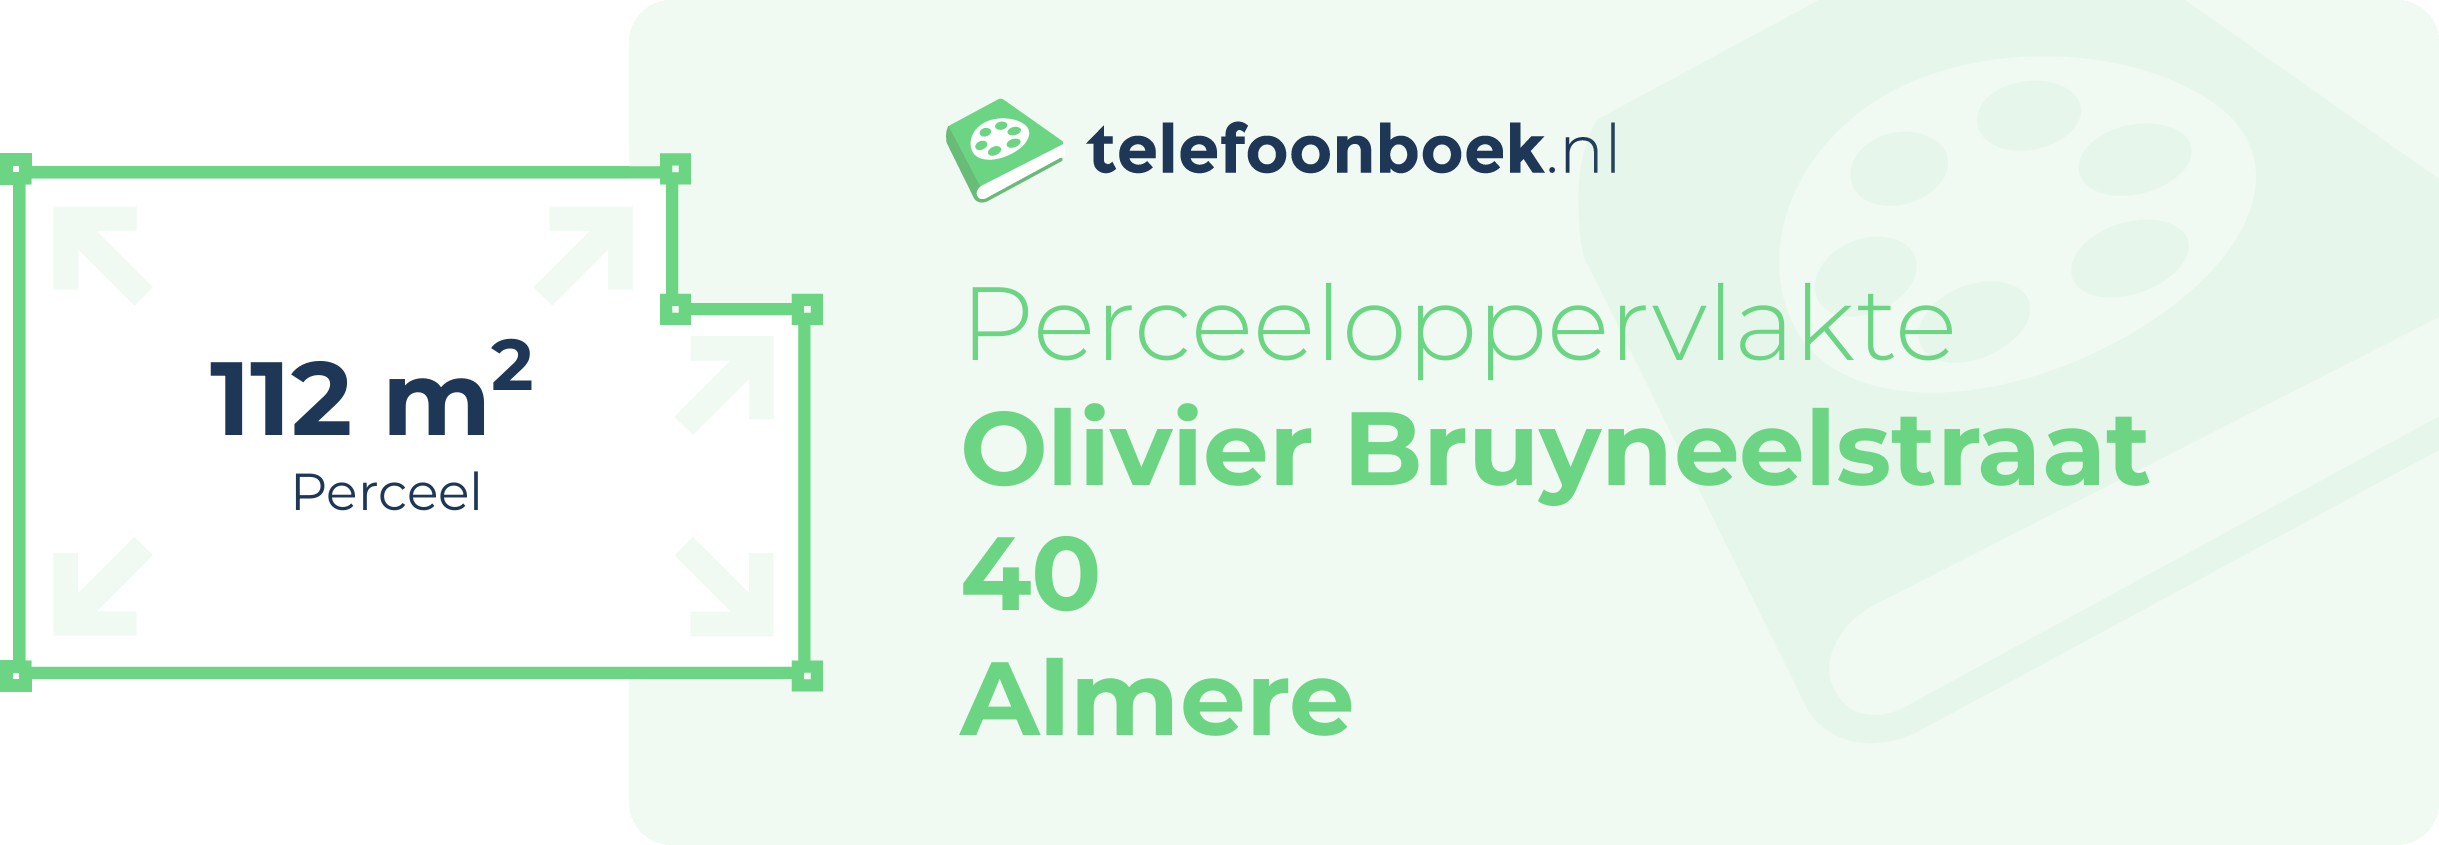 Perceeloppervlakte Olivier Bruyneelstraat 40 Almere